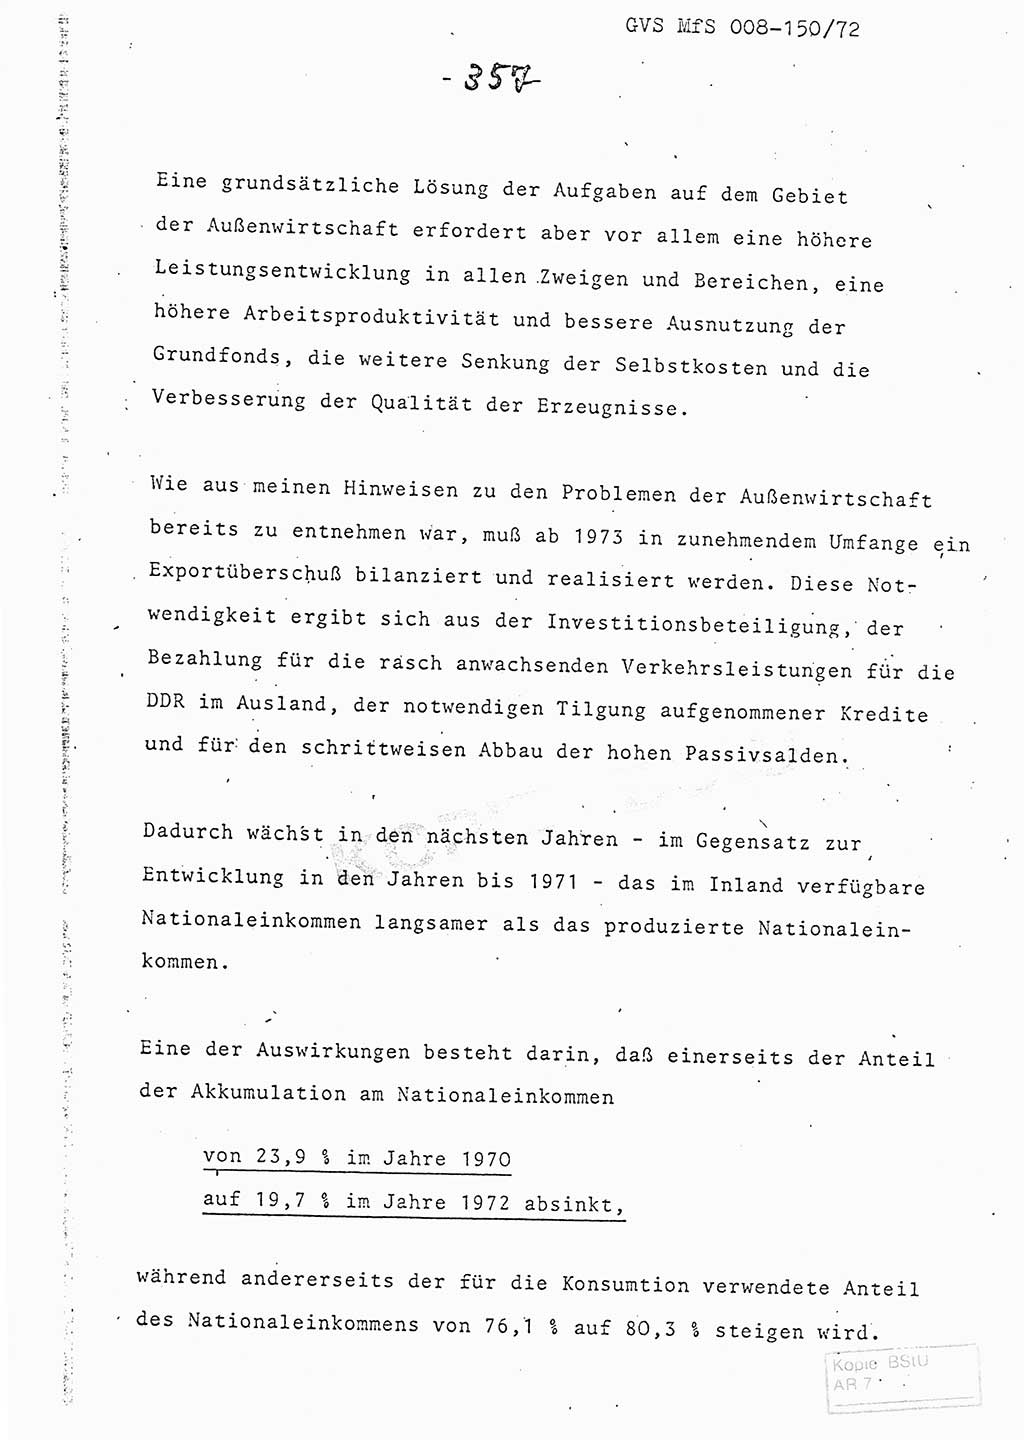 Referat (Entwurf) des Genossen Minister (Generaloberst Erich Mielke) auf der Dienstkonferenz 1972, Ministerium für Staatssicherheit (MfS) [Deutsche Demokratische Republik (DDR)], Der Minister, Geheime Verschlußsache (GVS) 008-150/72, Berlin 25.2.1972, Seite 357 (Ref. Entw. DK MfS DDR Min. GVS 008-150/72 1972, S. 357)